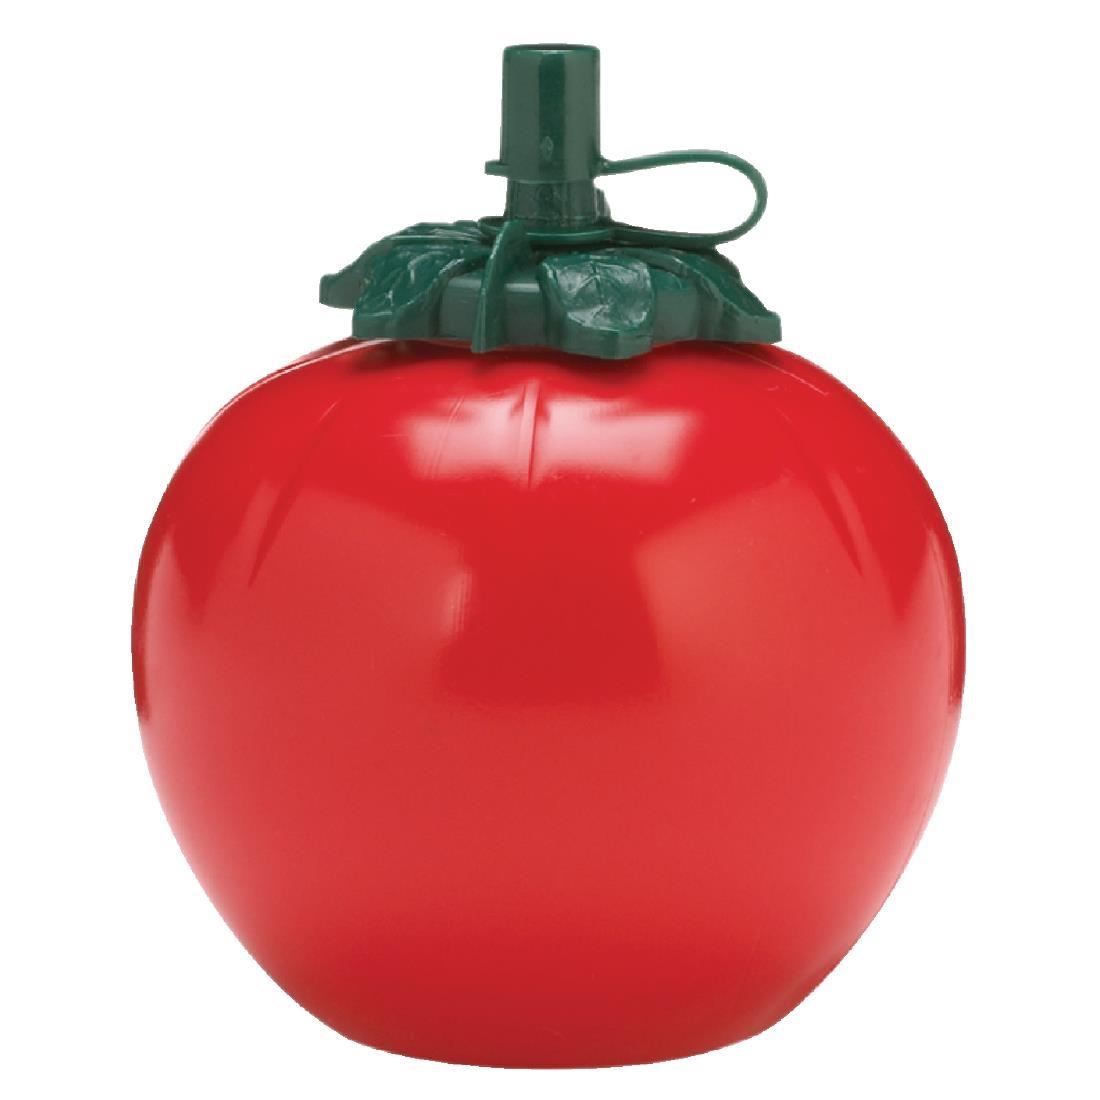 Tomato Sauce Bottle - CK788  - 1